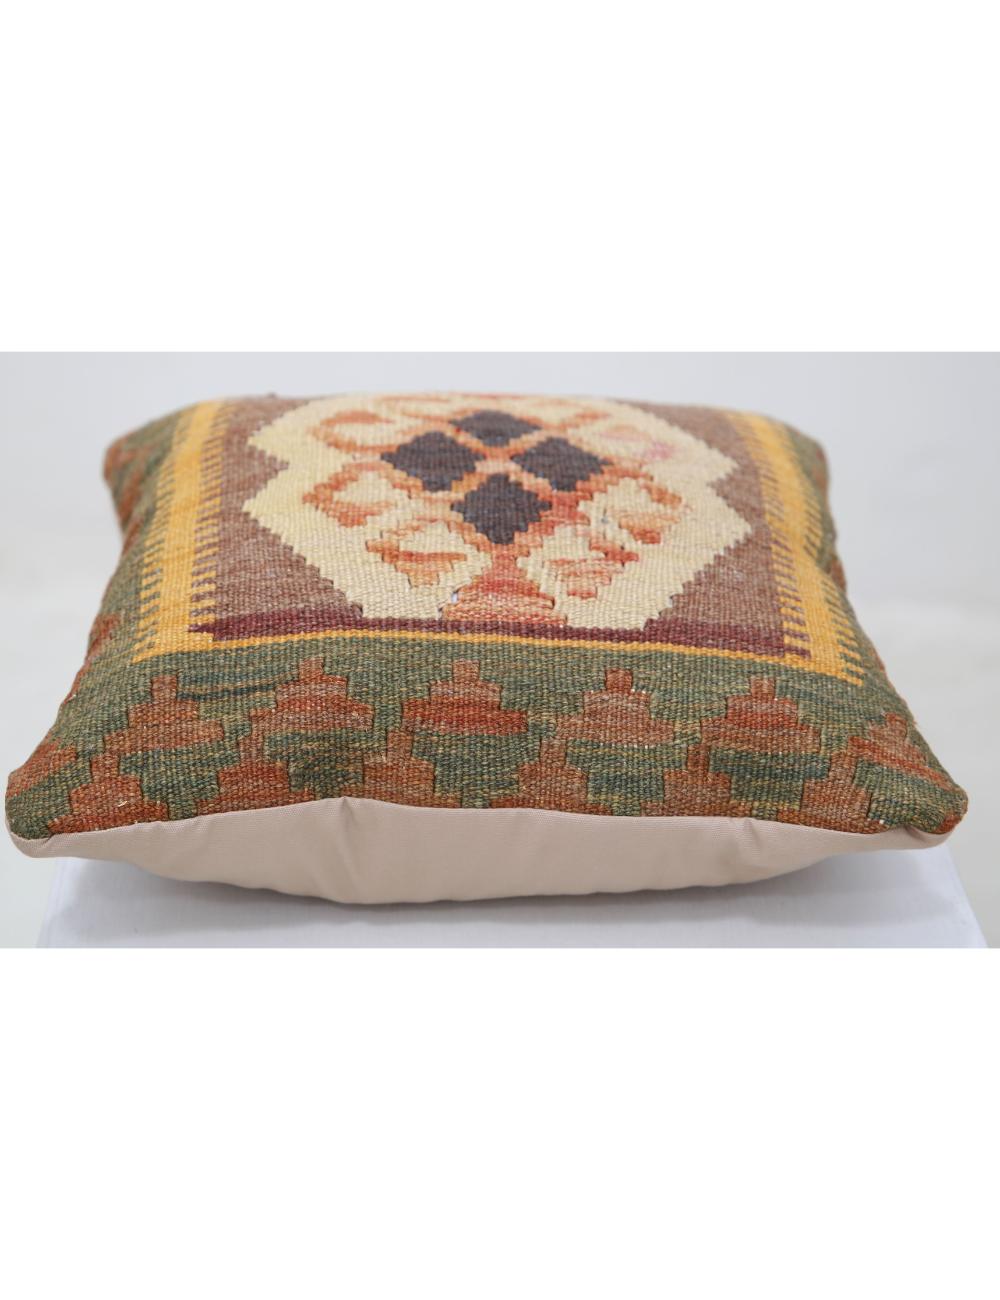 Hand Woven Tribal Multi Color Geometric Wool Pillow - 1'0'' x 1'0'' Arteverk Arteverk Rugs